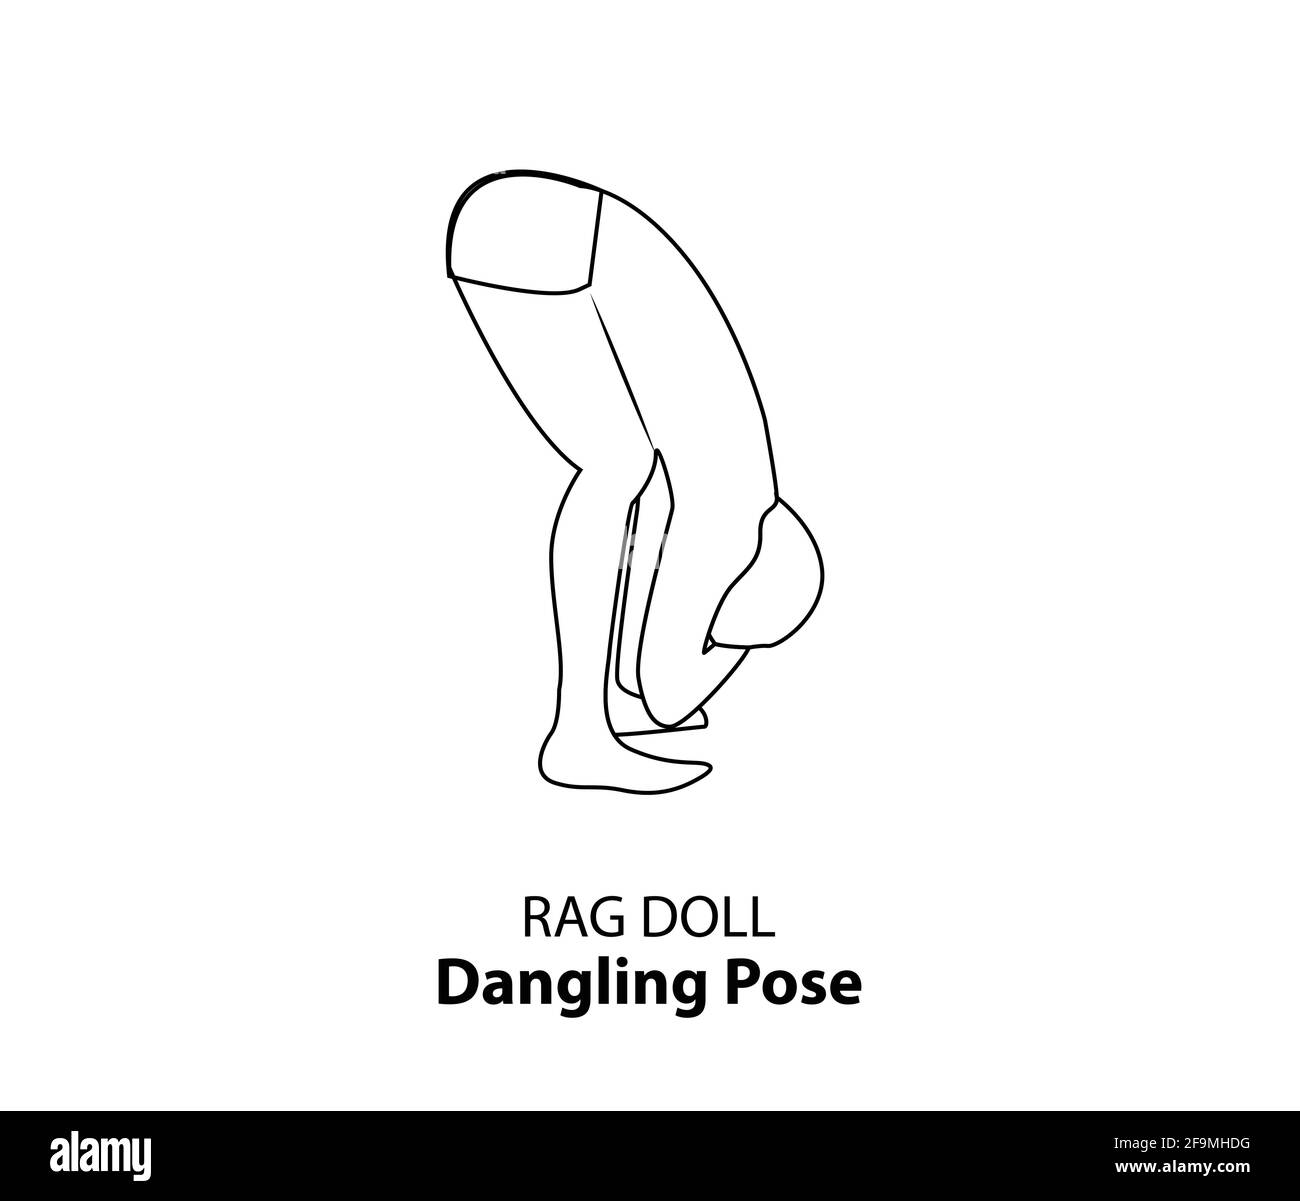 Homme pratiquant le yoga pose isolé contour Illustration. Homme debout dans RAG dol pose ou bancale, icône de la ligne d'Asana de Yoga Illustration de Vecteur